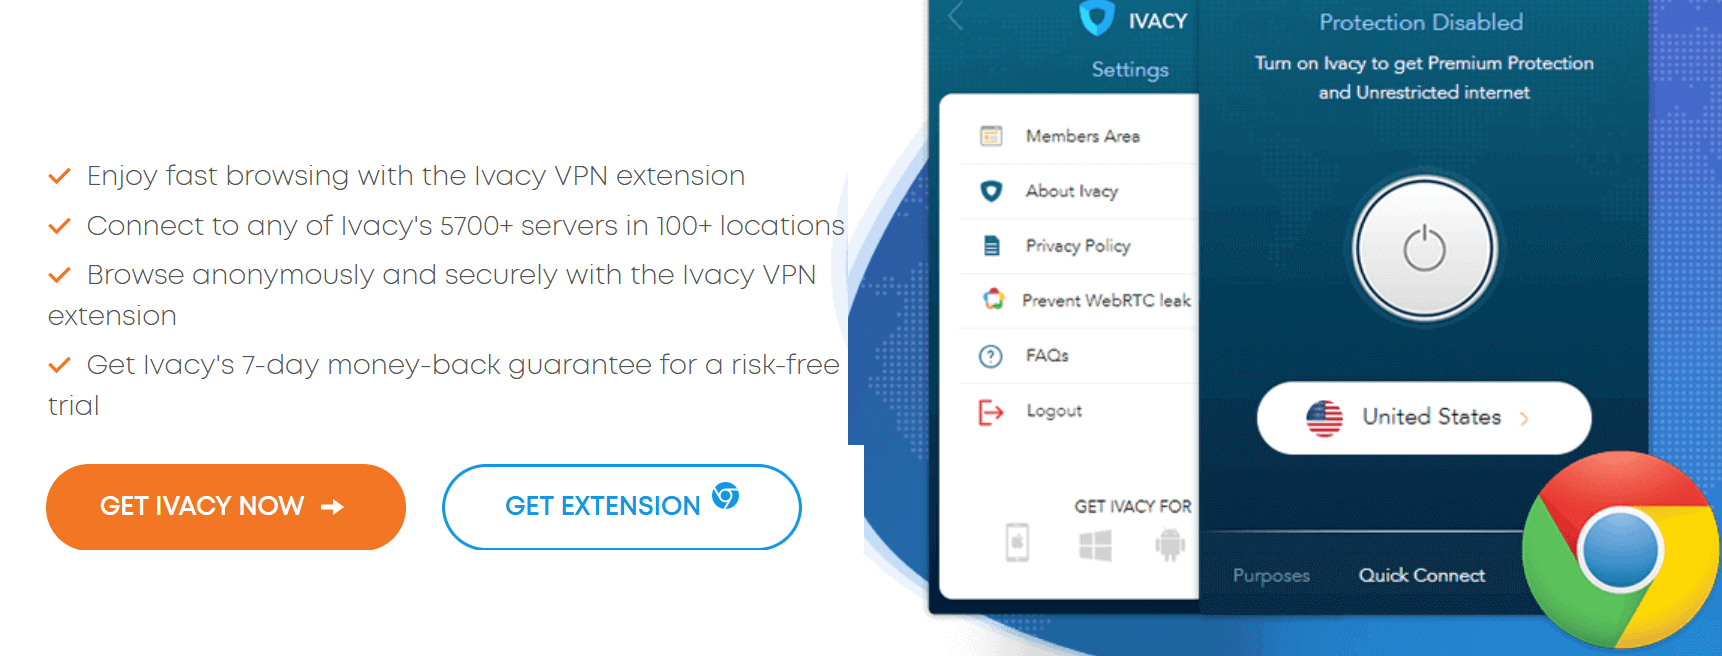 IVacy VPN For Chrome